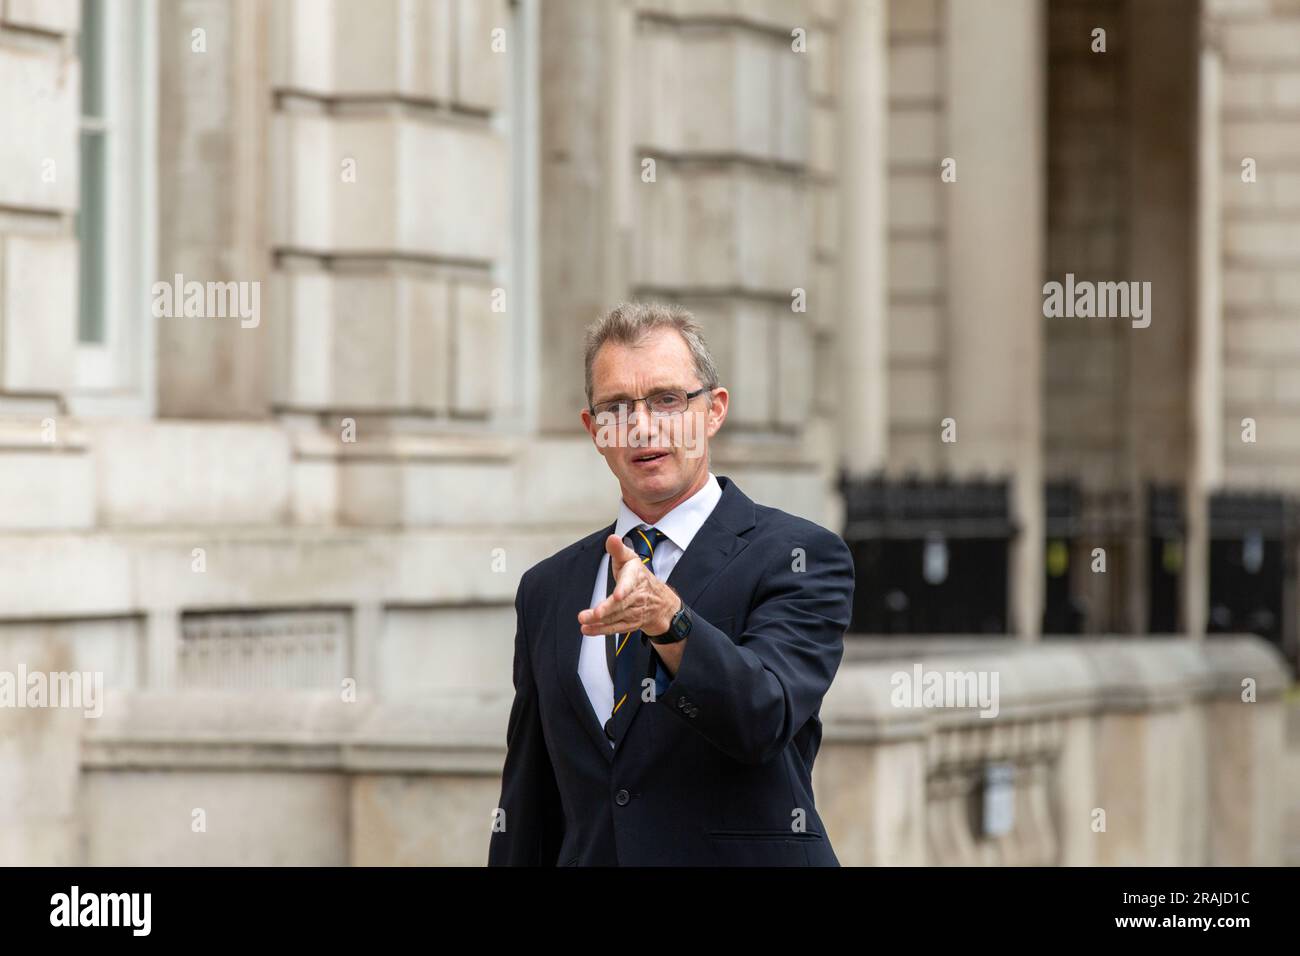 Londres, royaume-uni, 4th juillet David TC Davies, ministre gallois arrive au cabinet Whitehall crédit: Richard Lincoln/Alay Live News Banque D'Images